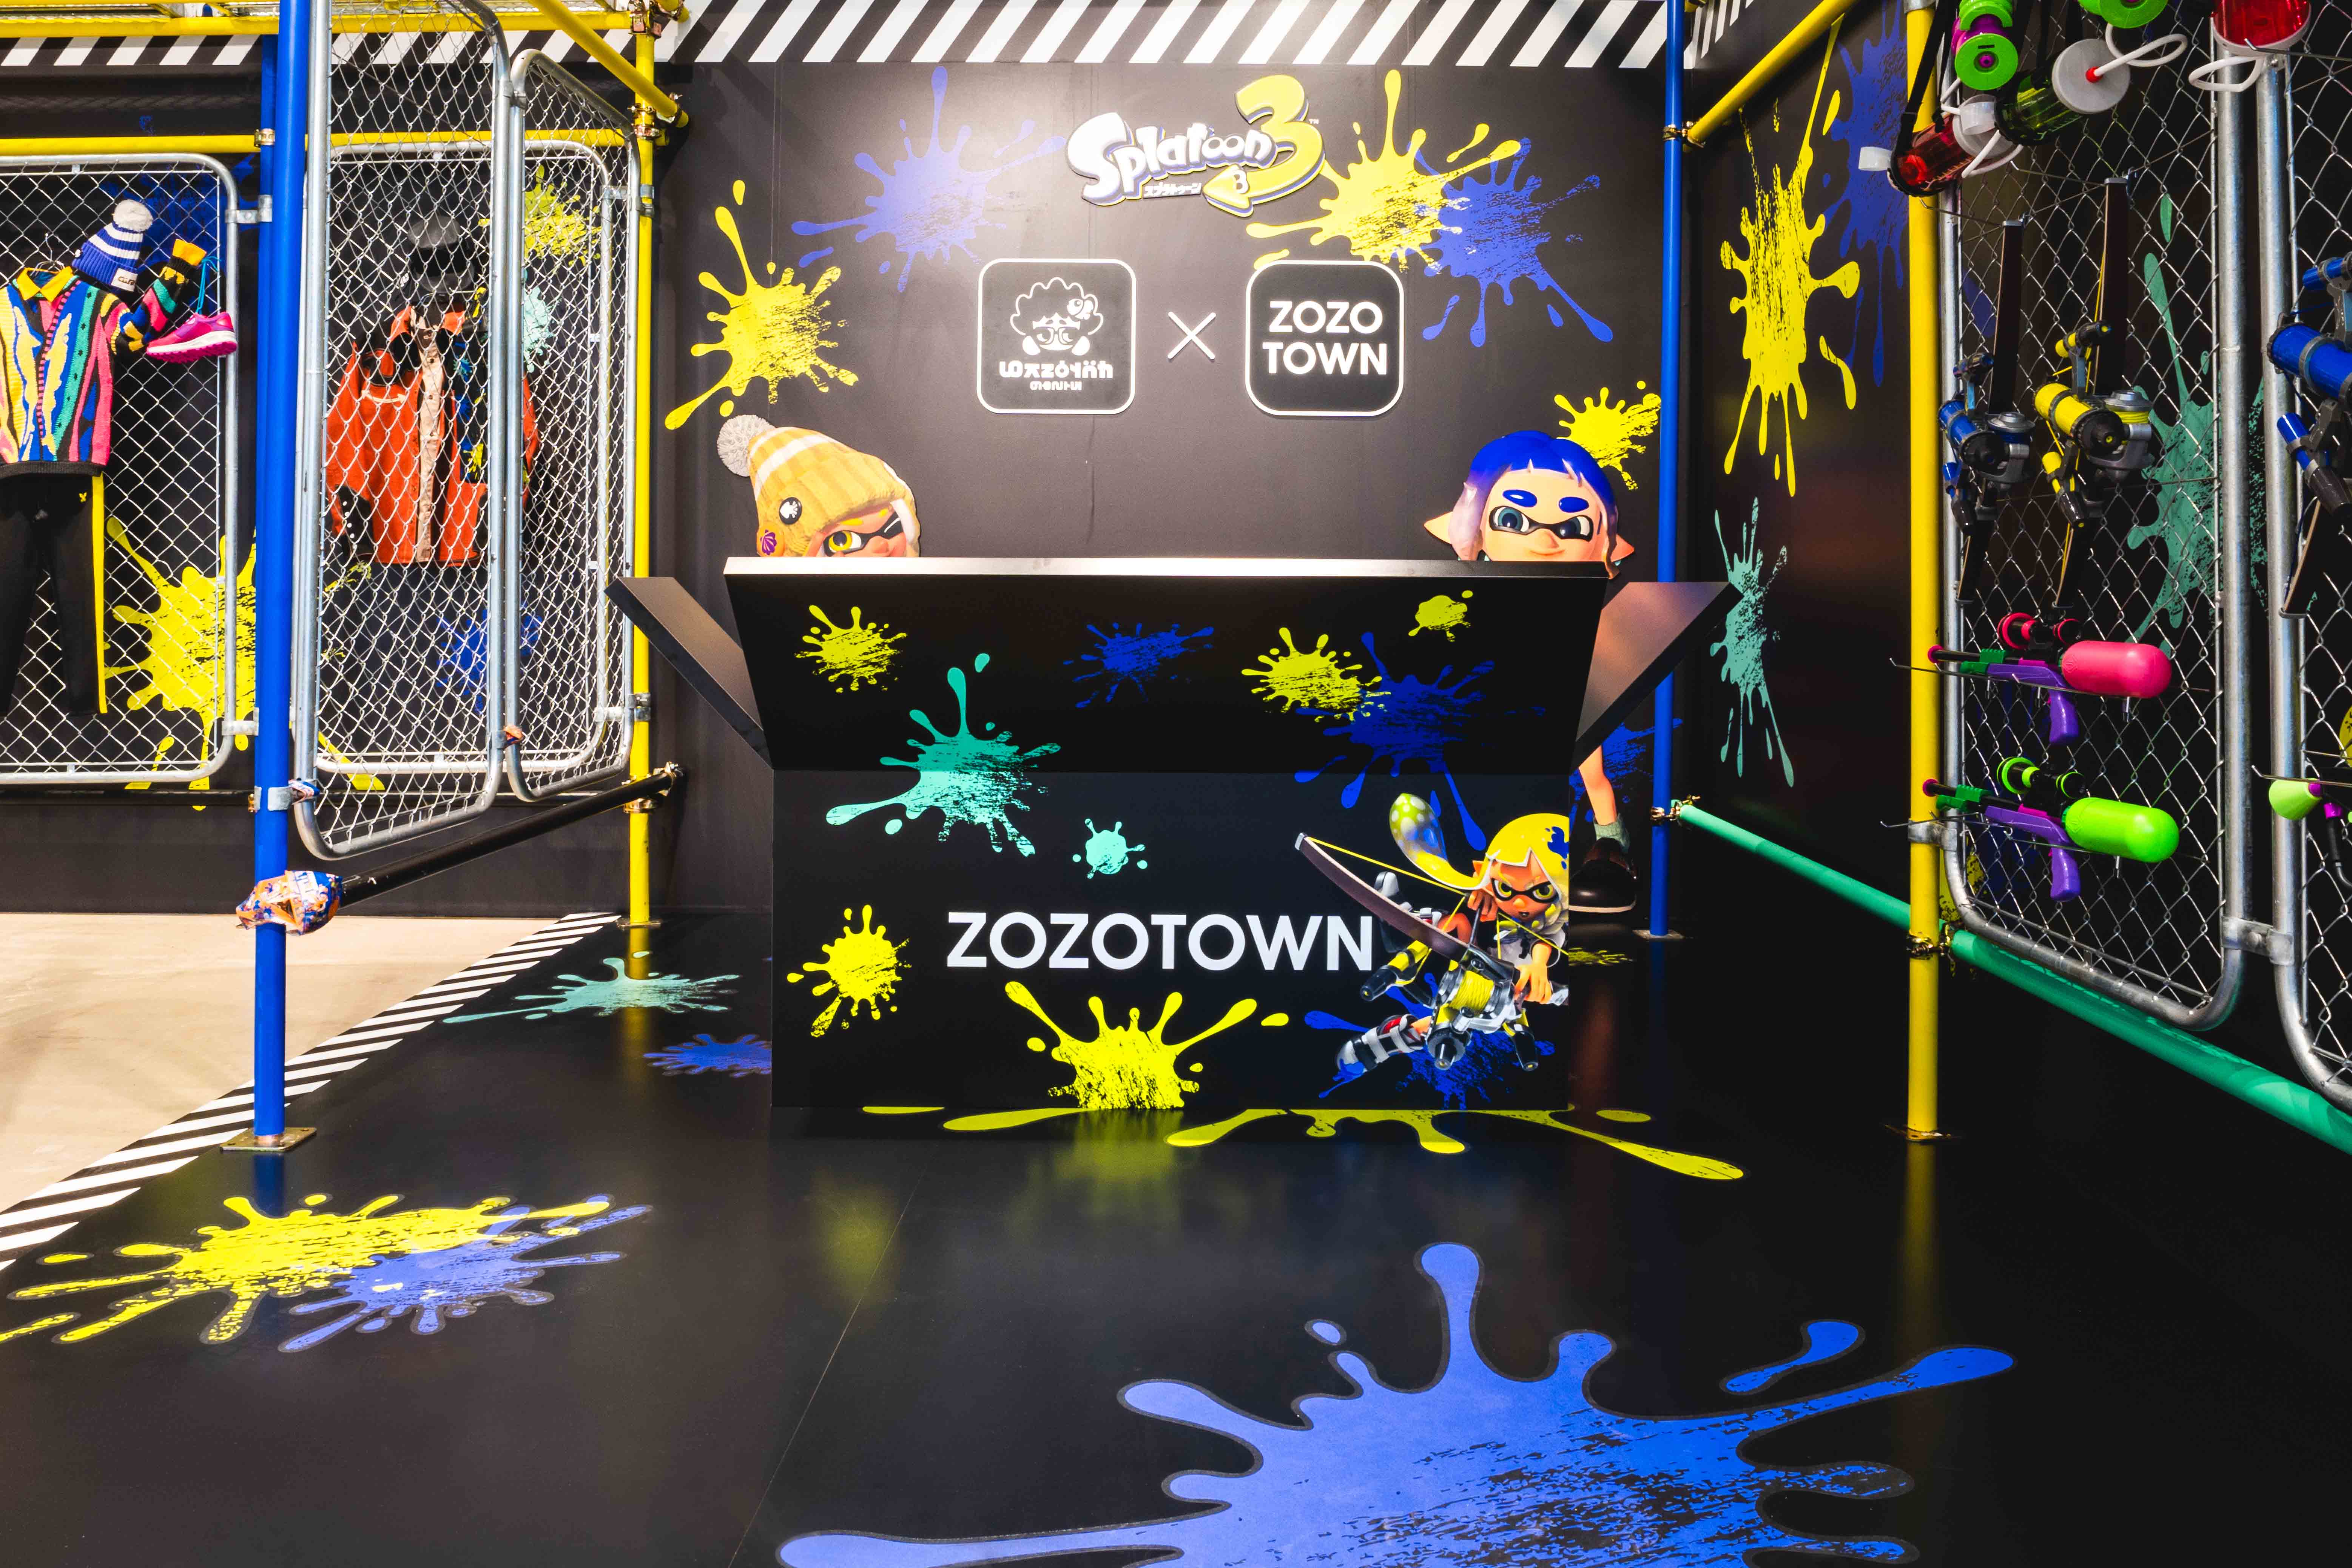 スプラトゥーン3 ゲソタウン × ZOZOTOWNのポップアップイベントを9月15